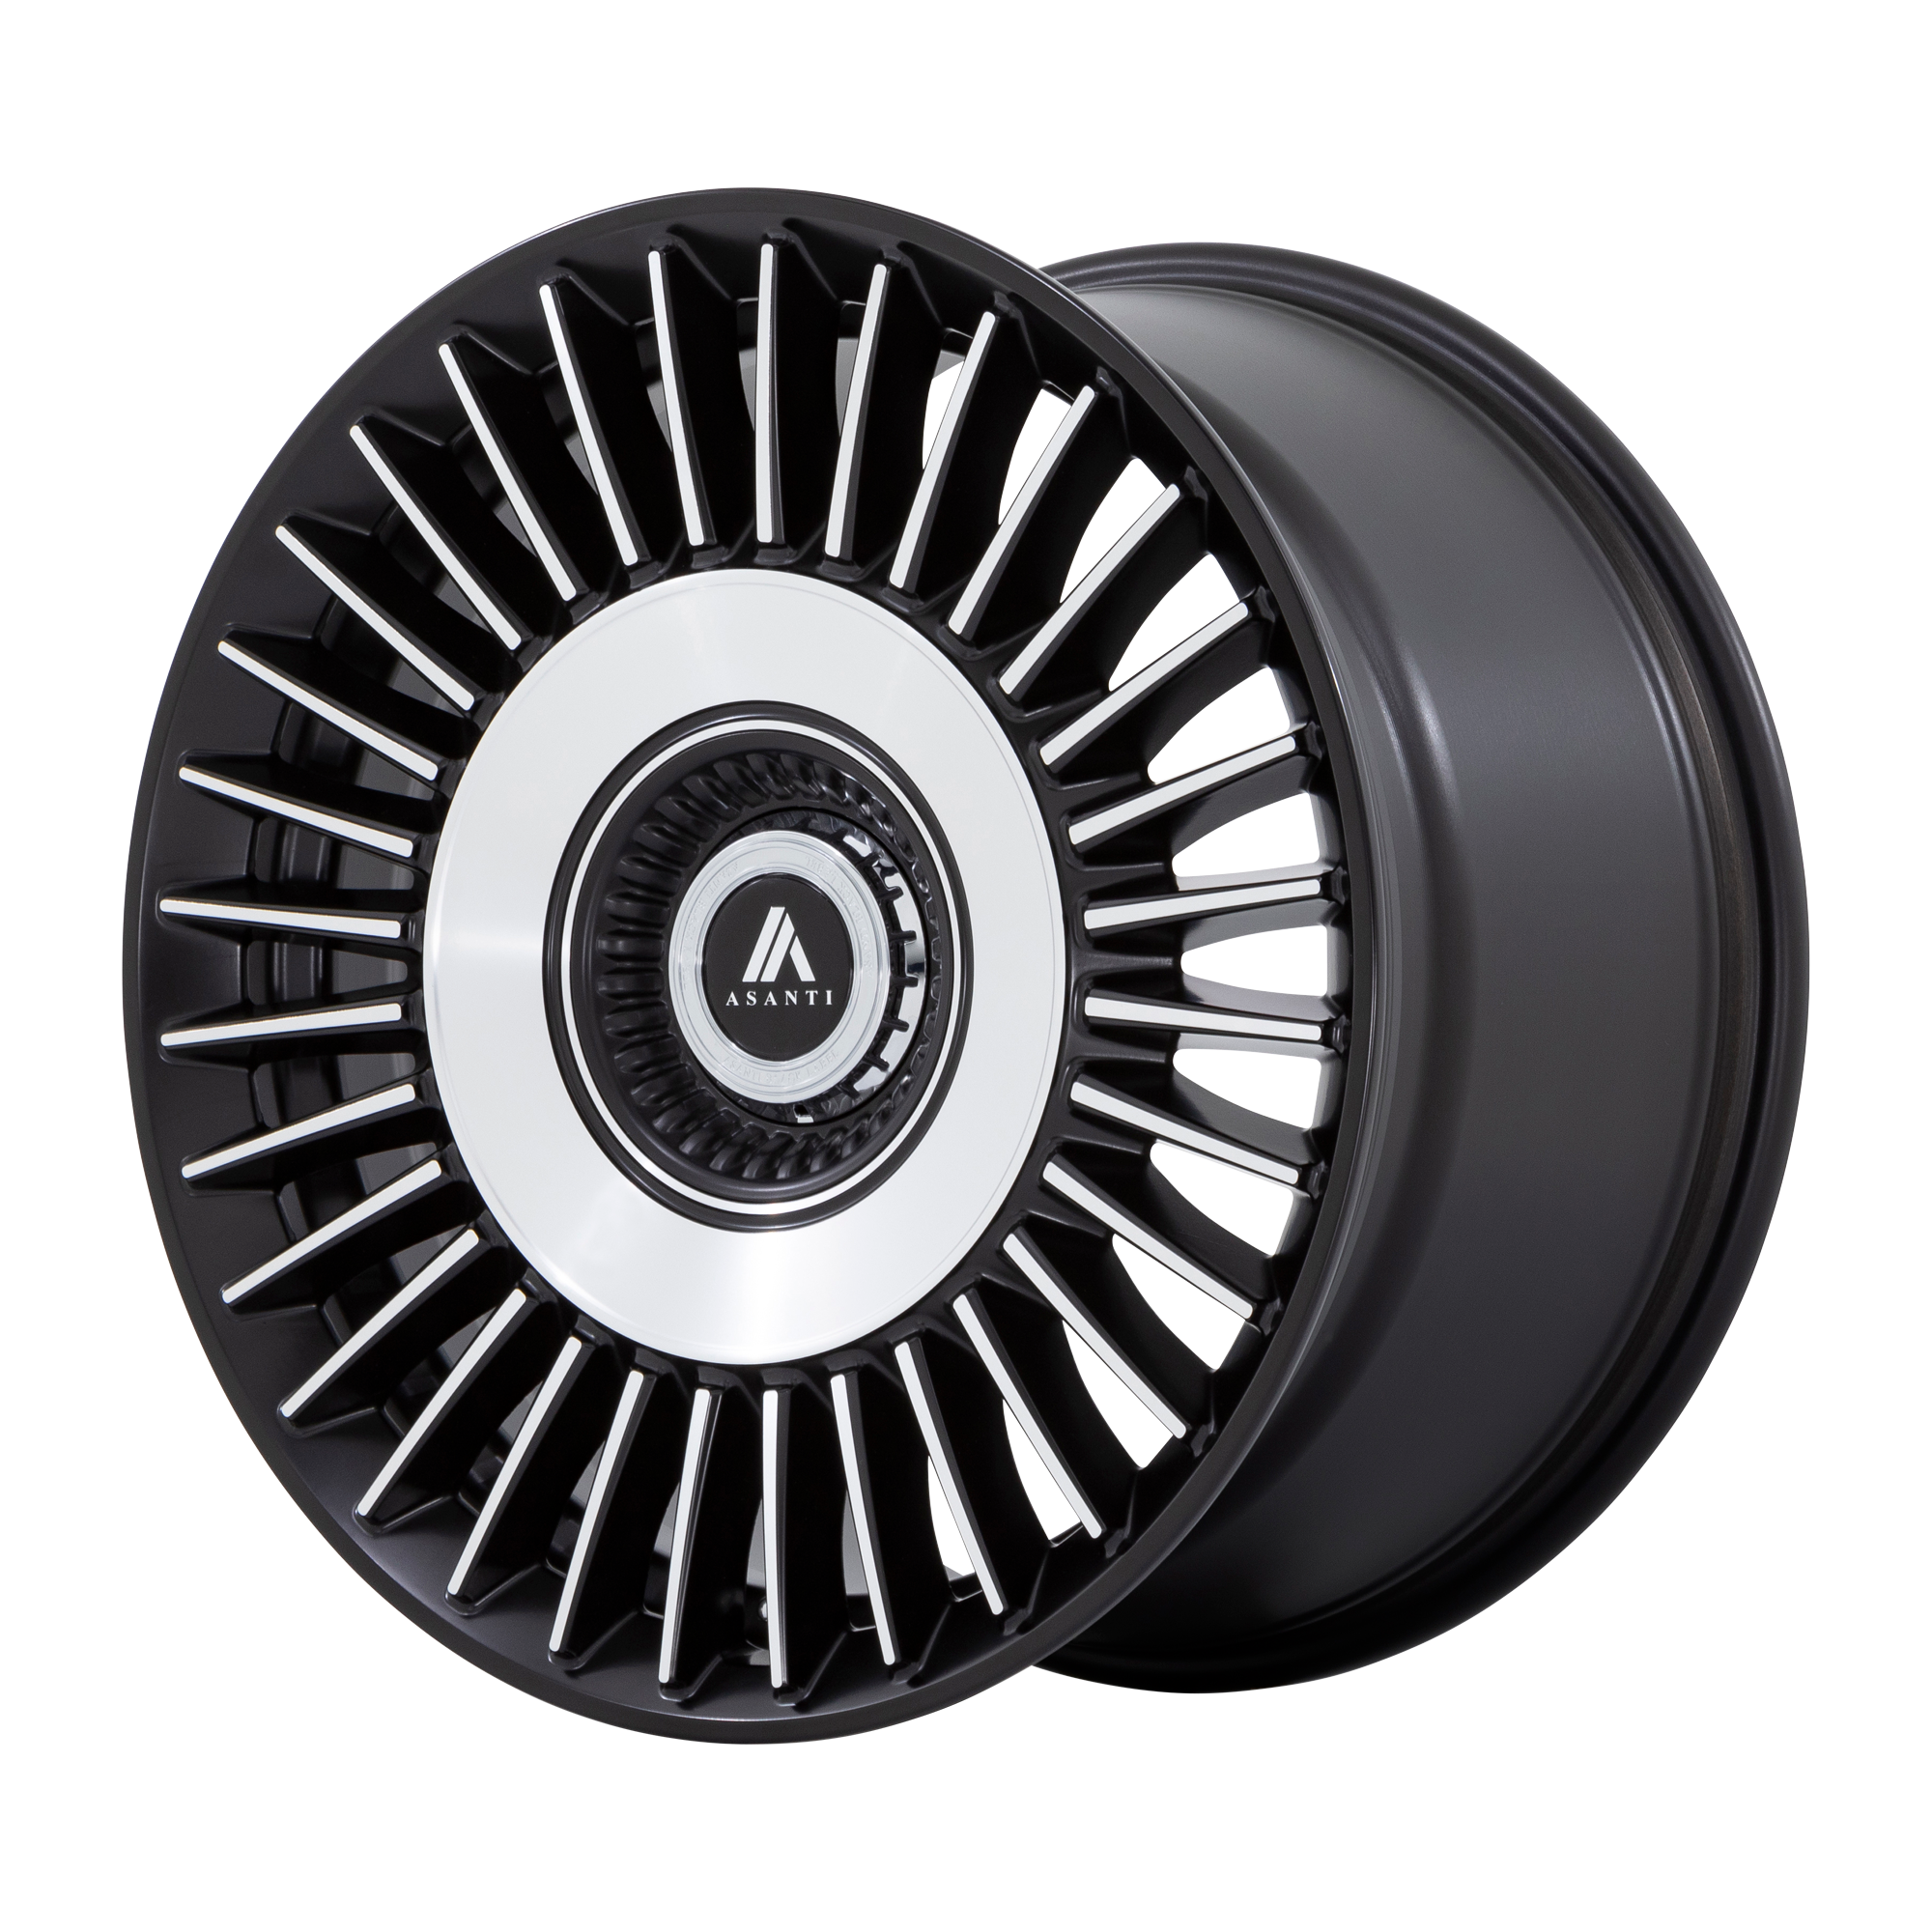 Asanti Wheels ABL-40 TIARA - Satin Black Bright Mach Face - Wheel Warehouse